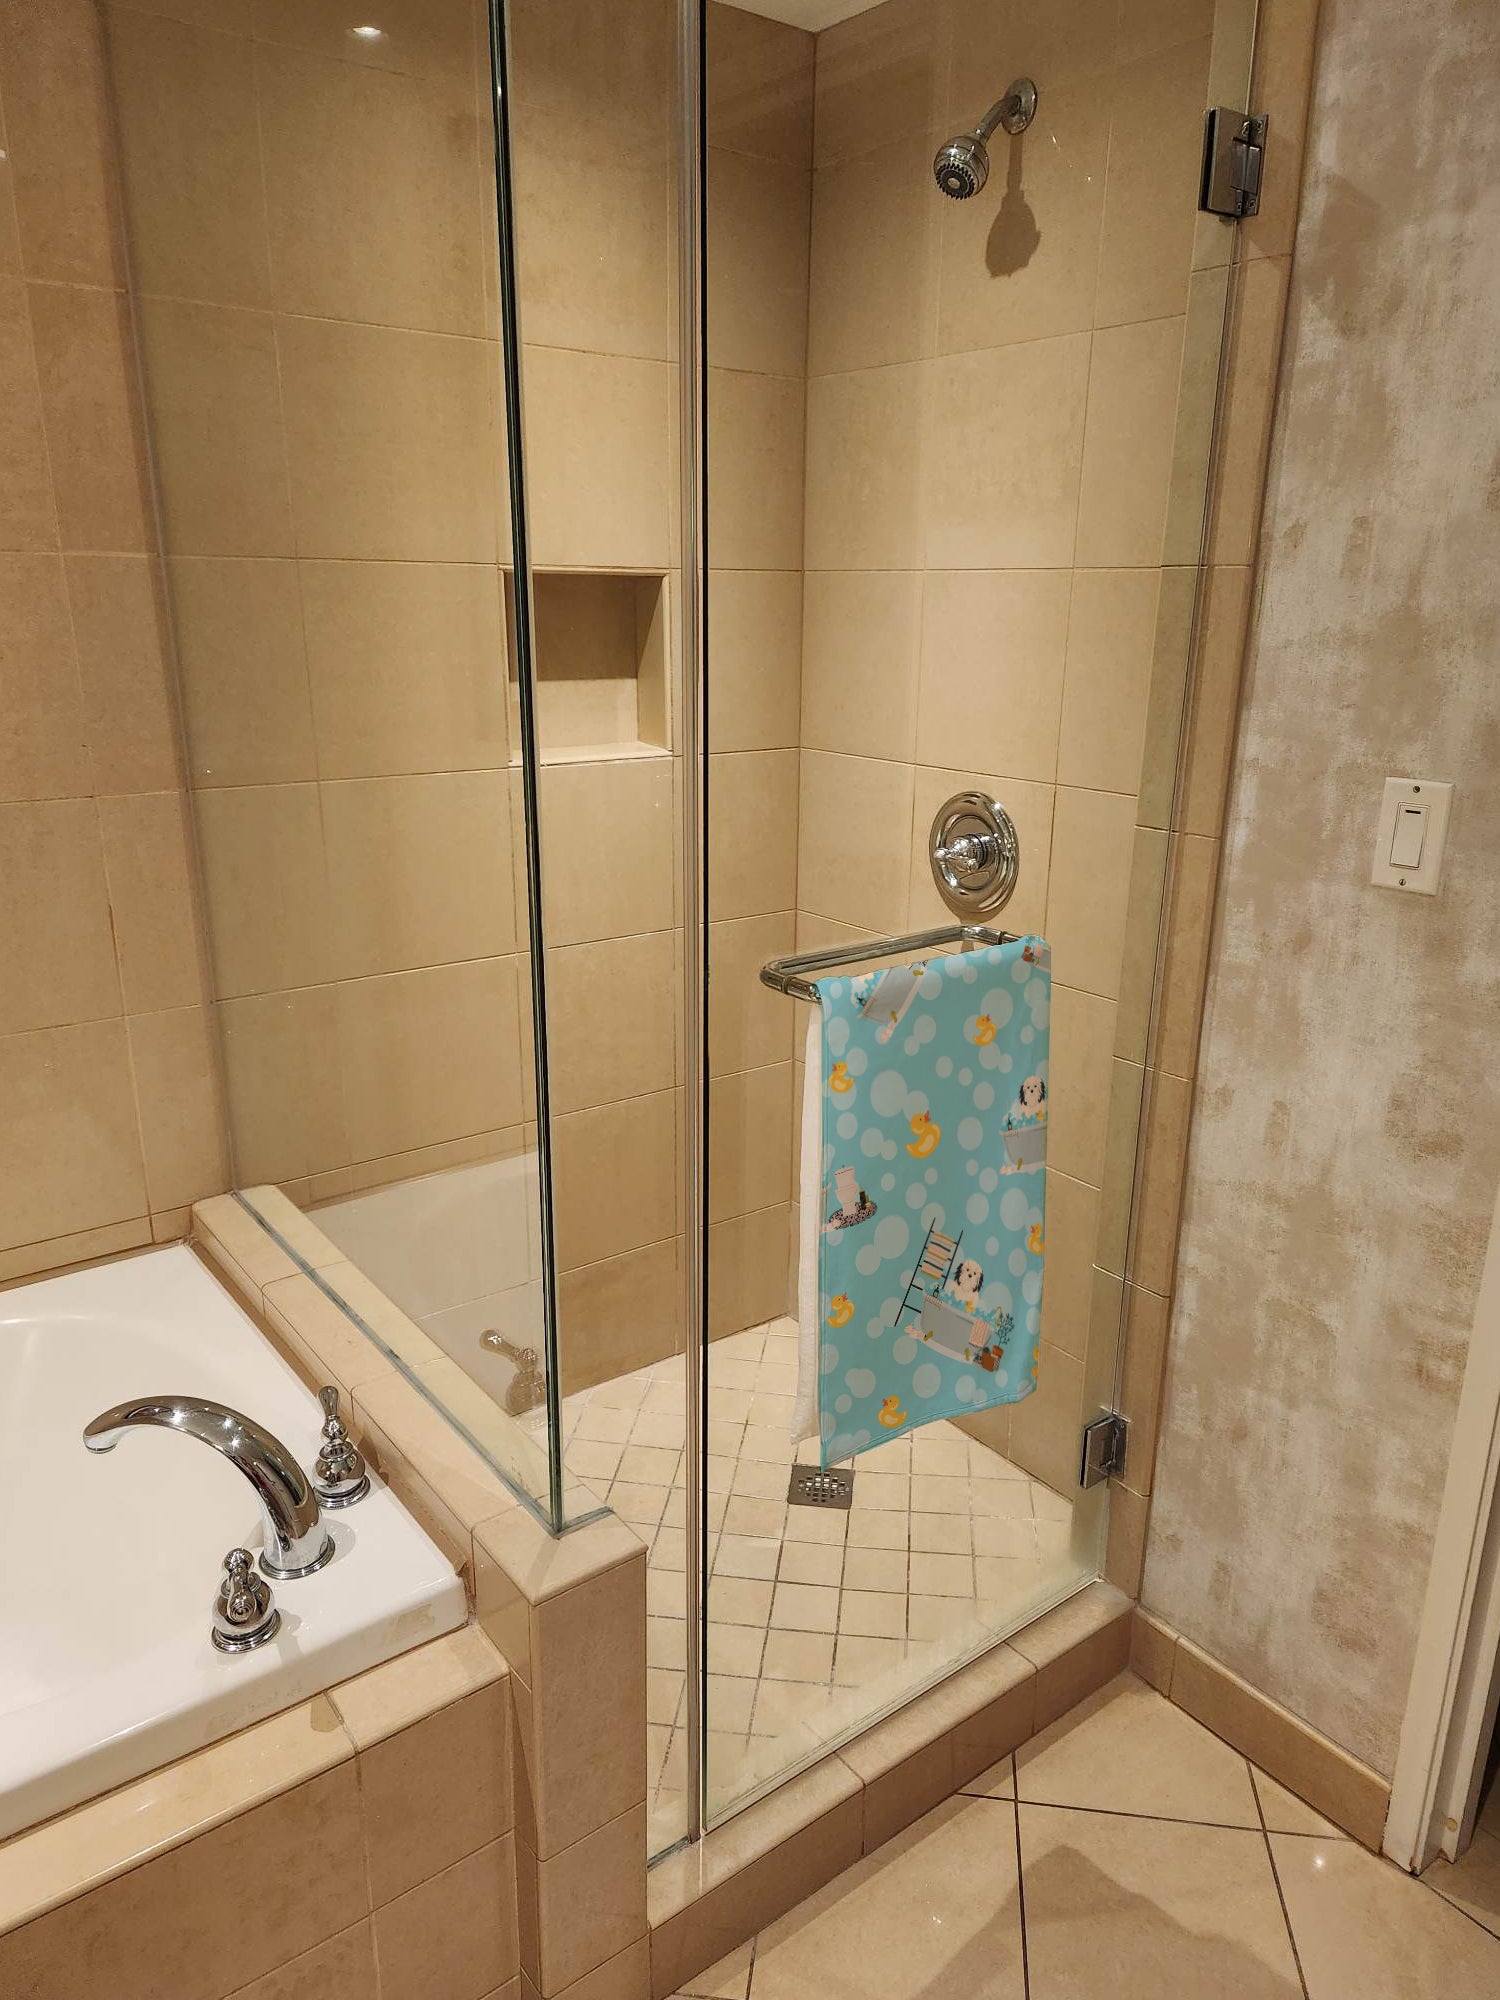 Lowchen in Bathtub Bath Towel Large